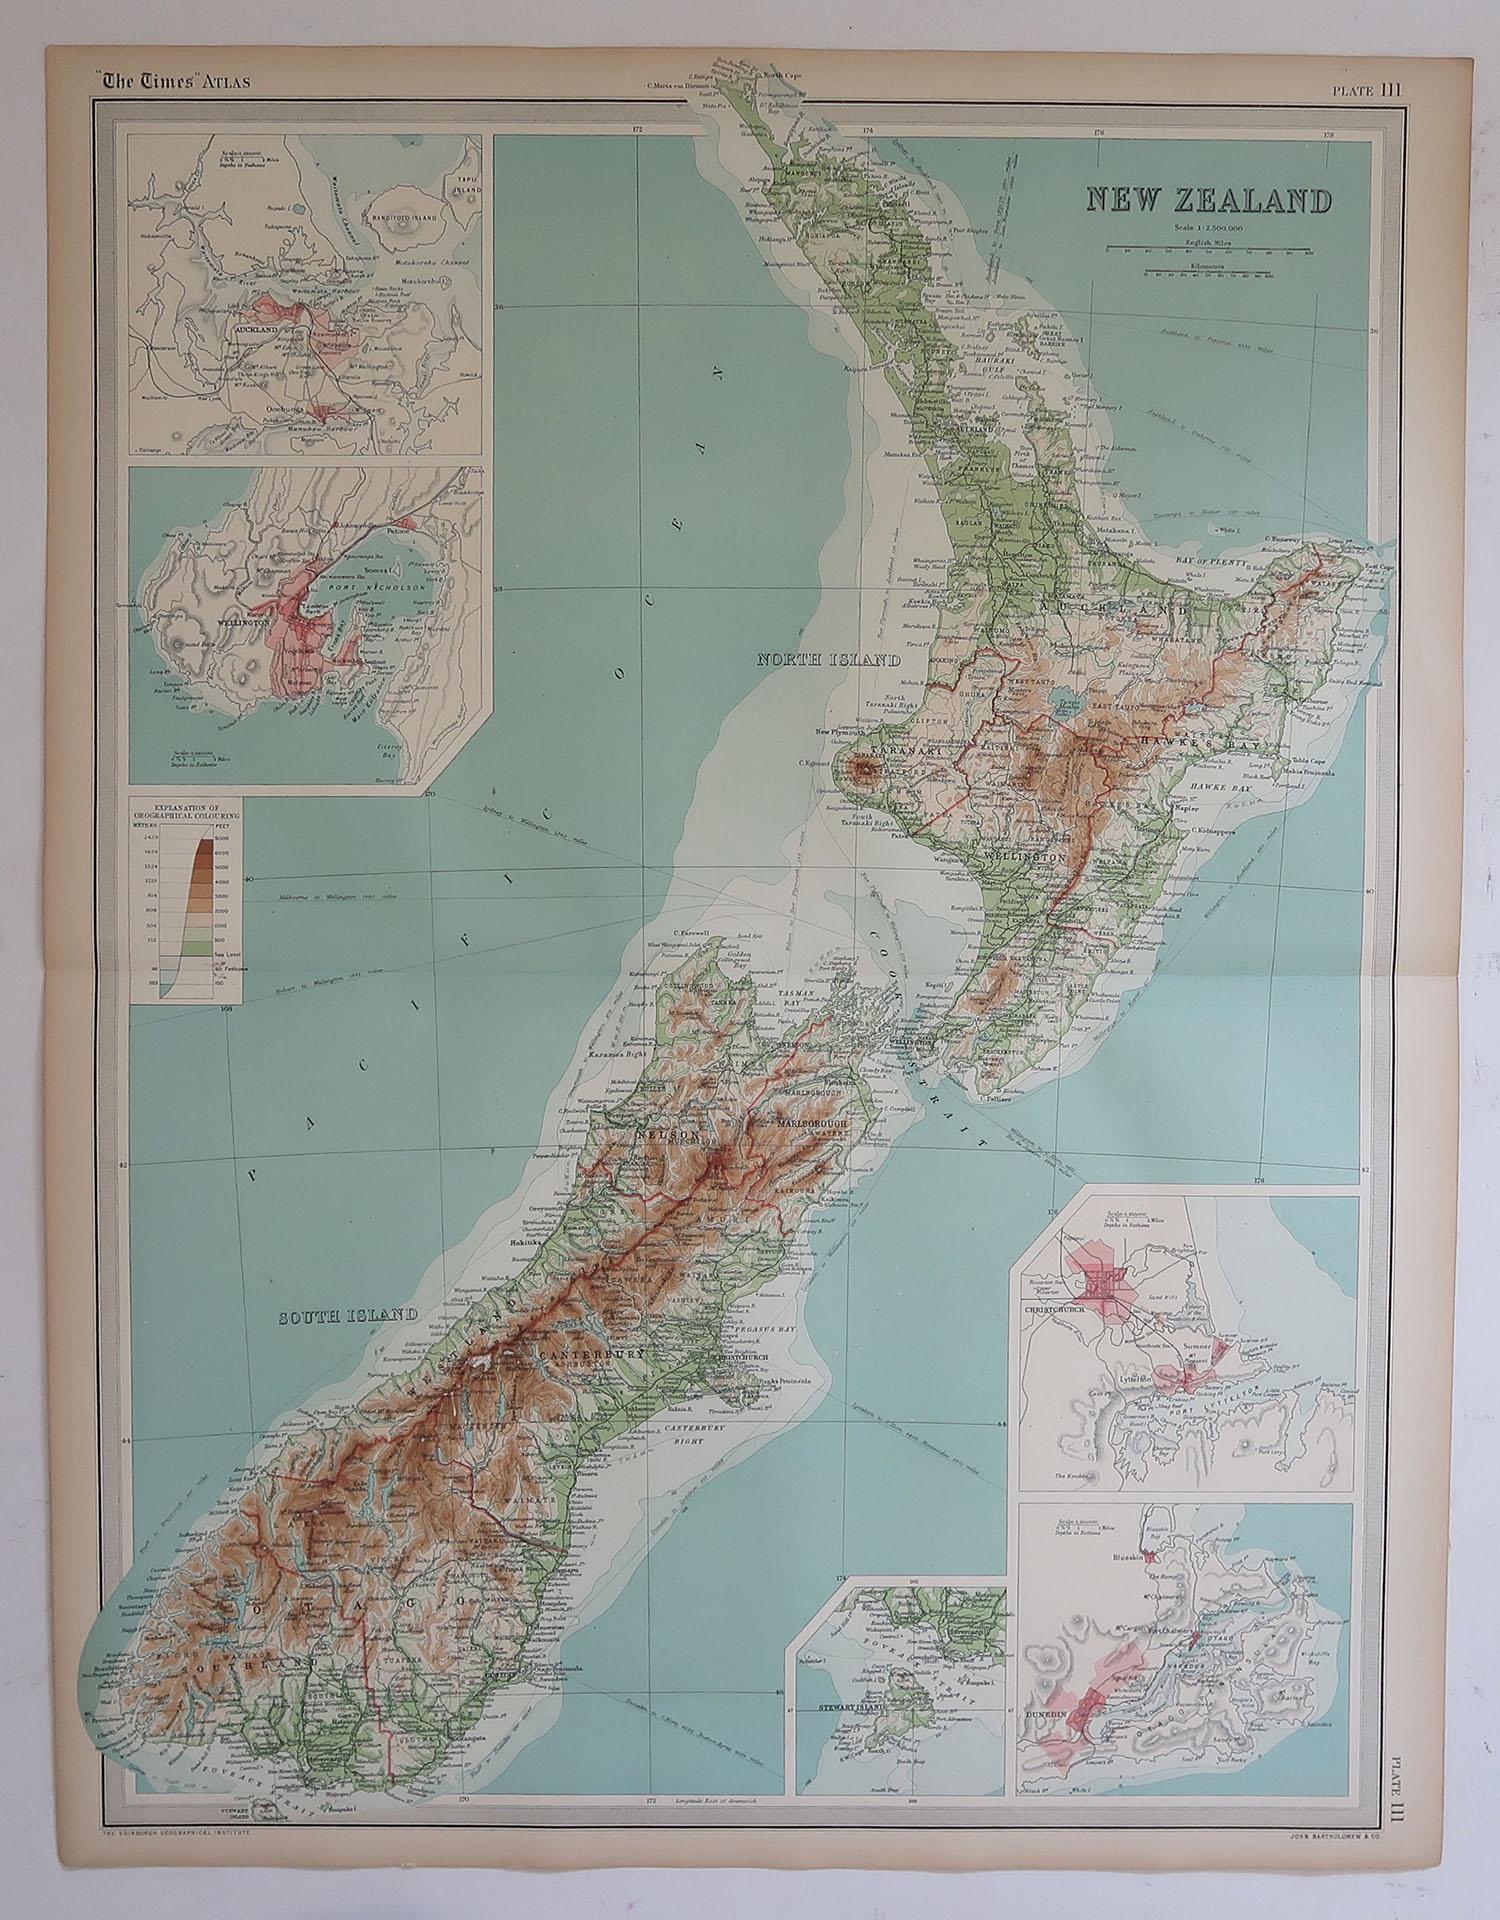 British Large Original Antique Map of New Zealand by Bartholomew, circa 1920